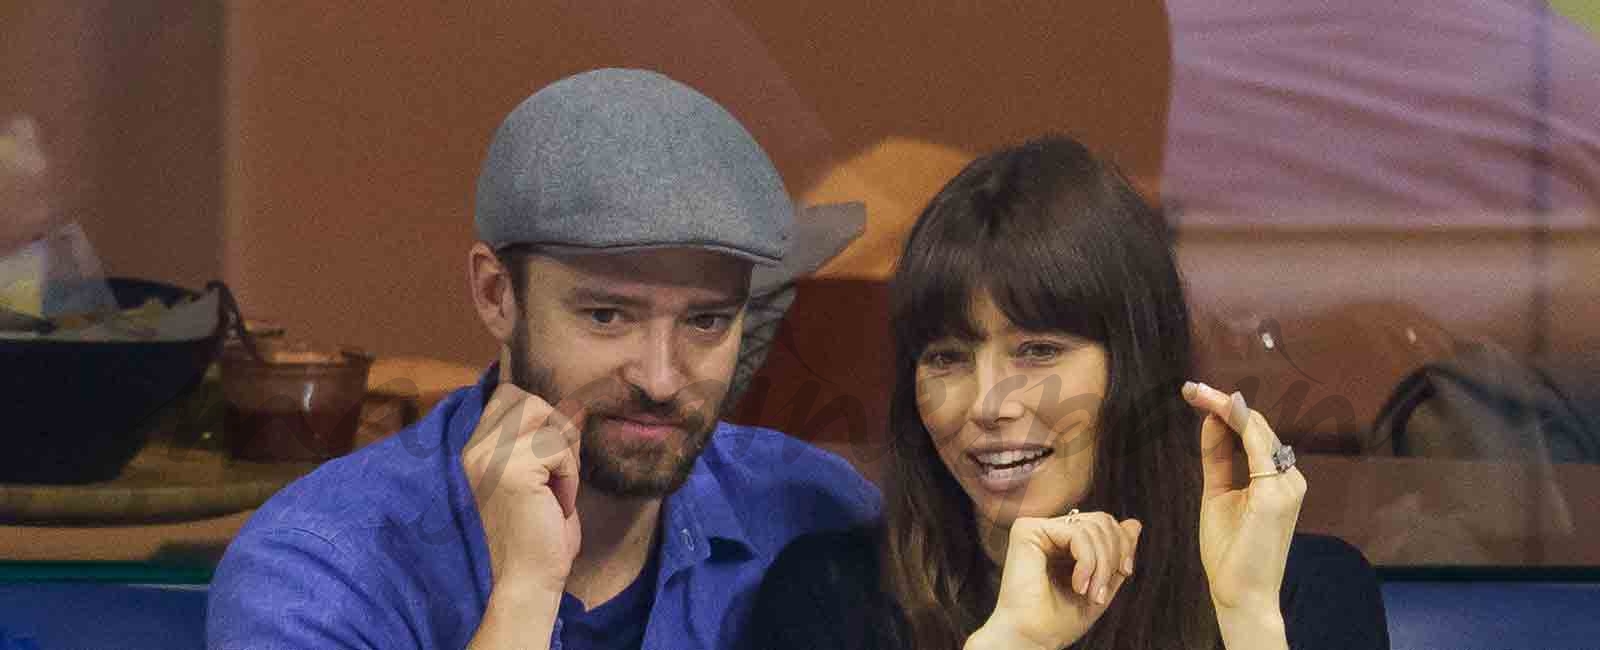 Al año de casarse , Justin Timberlake y Jessica Biel se divorcian